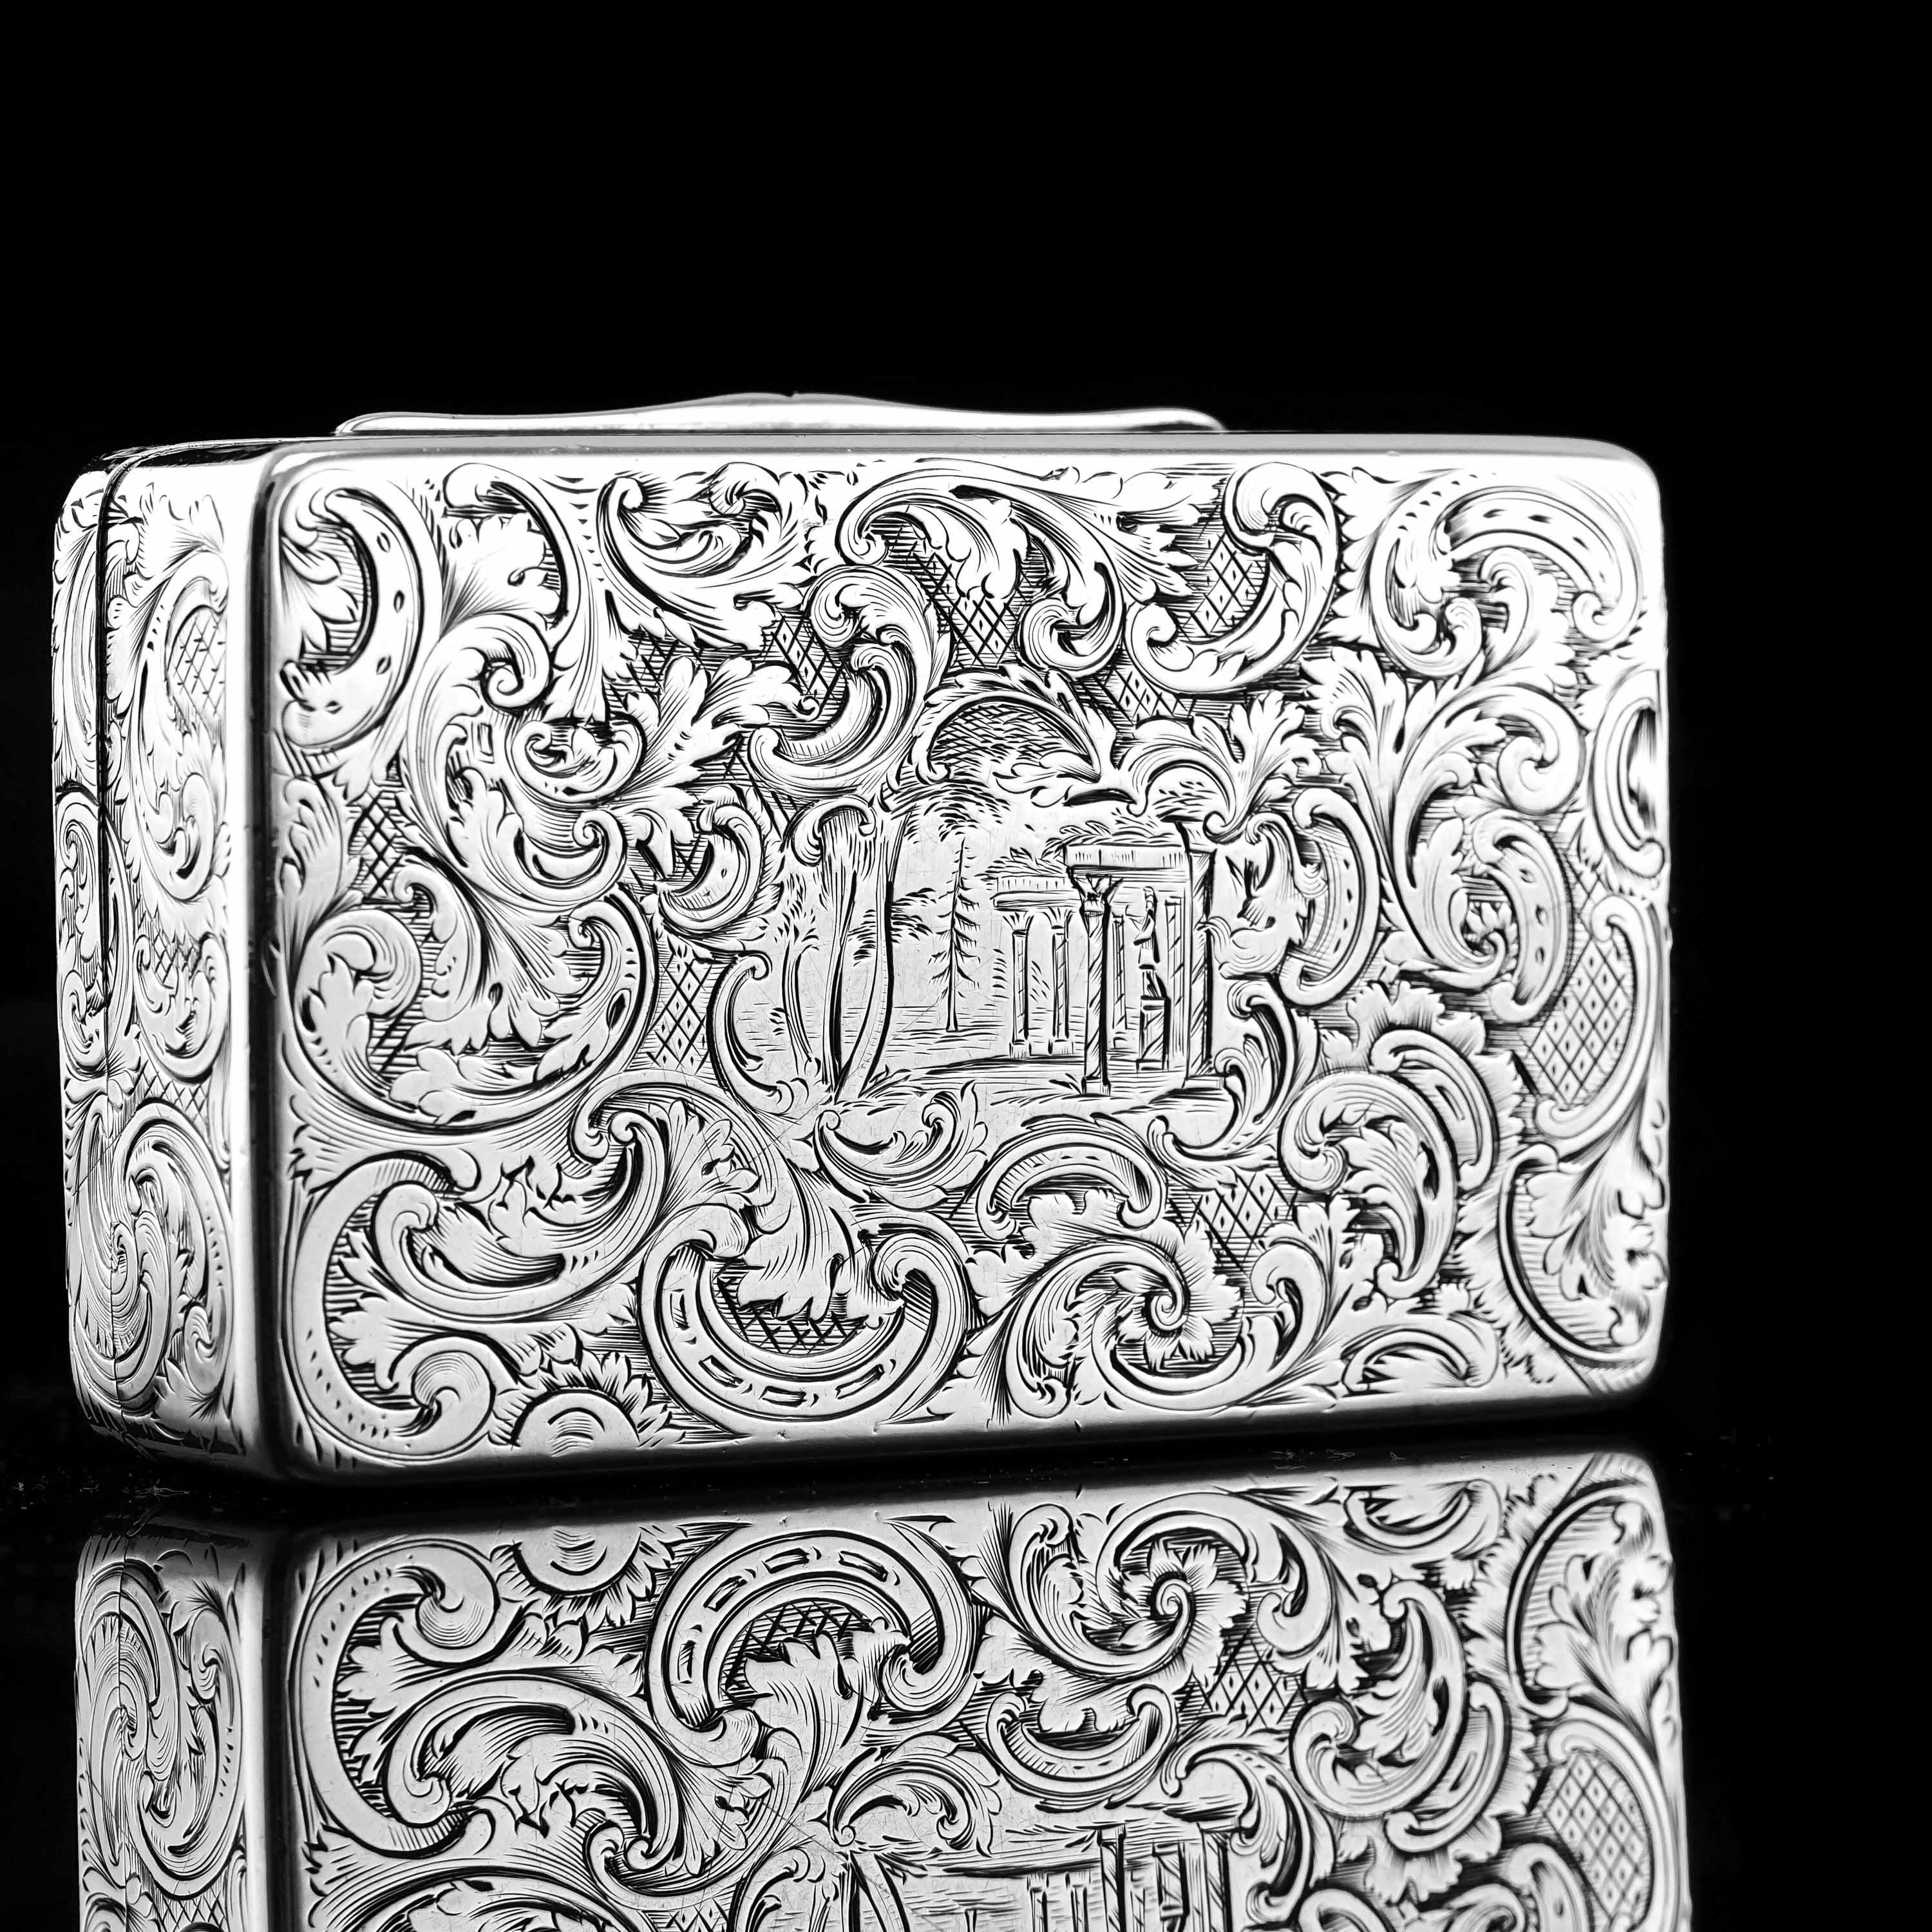 Antique Silver Snuff Box Hunting Scene Design - 1837 For Sale 5